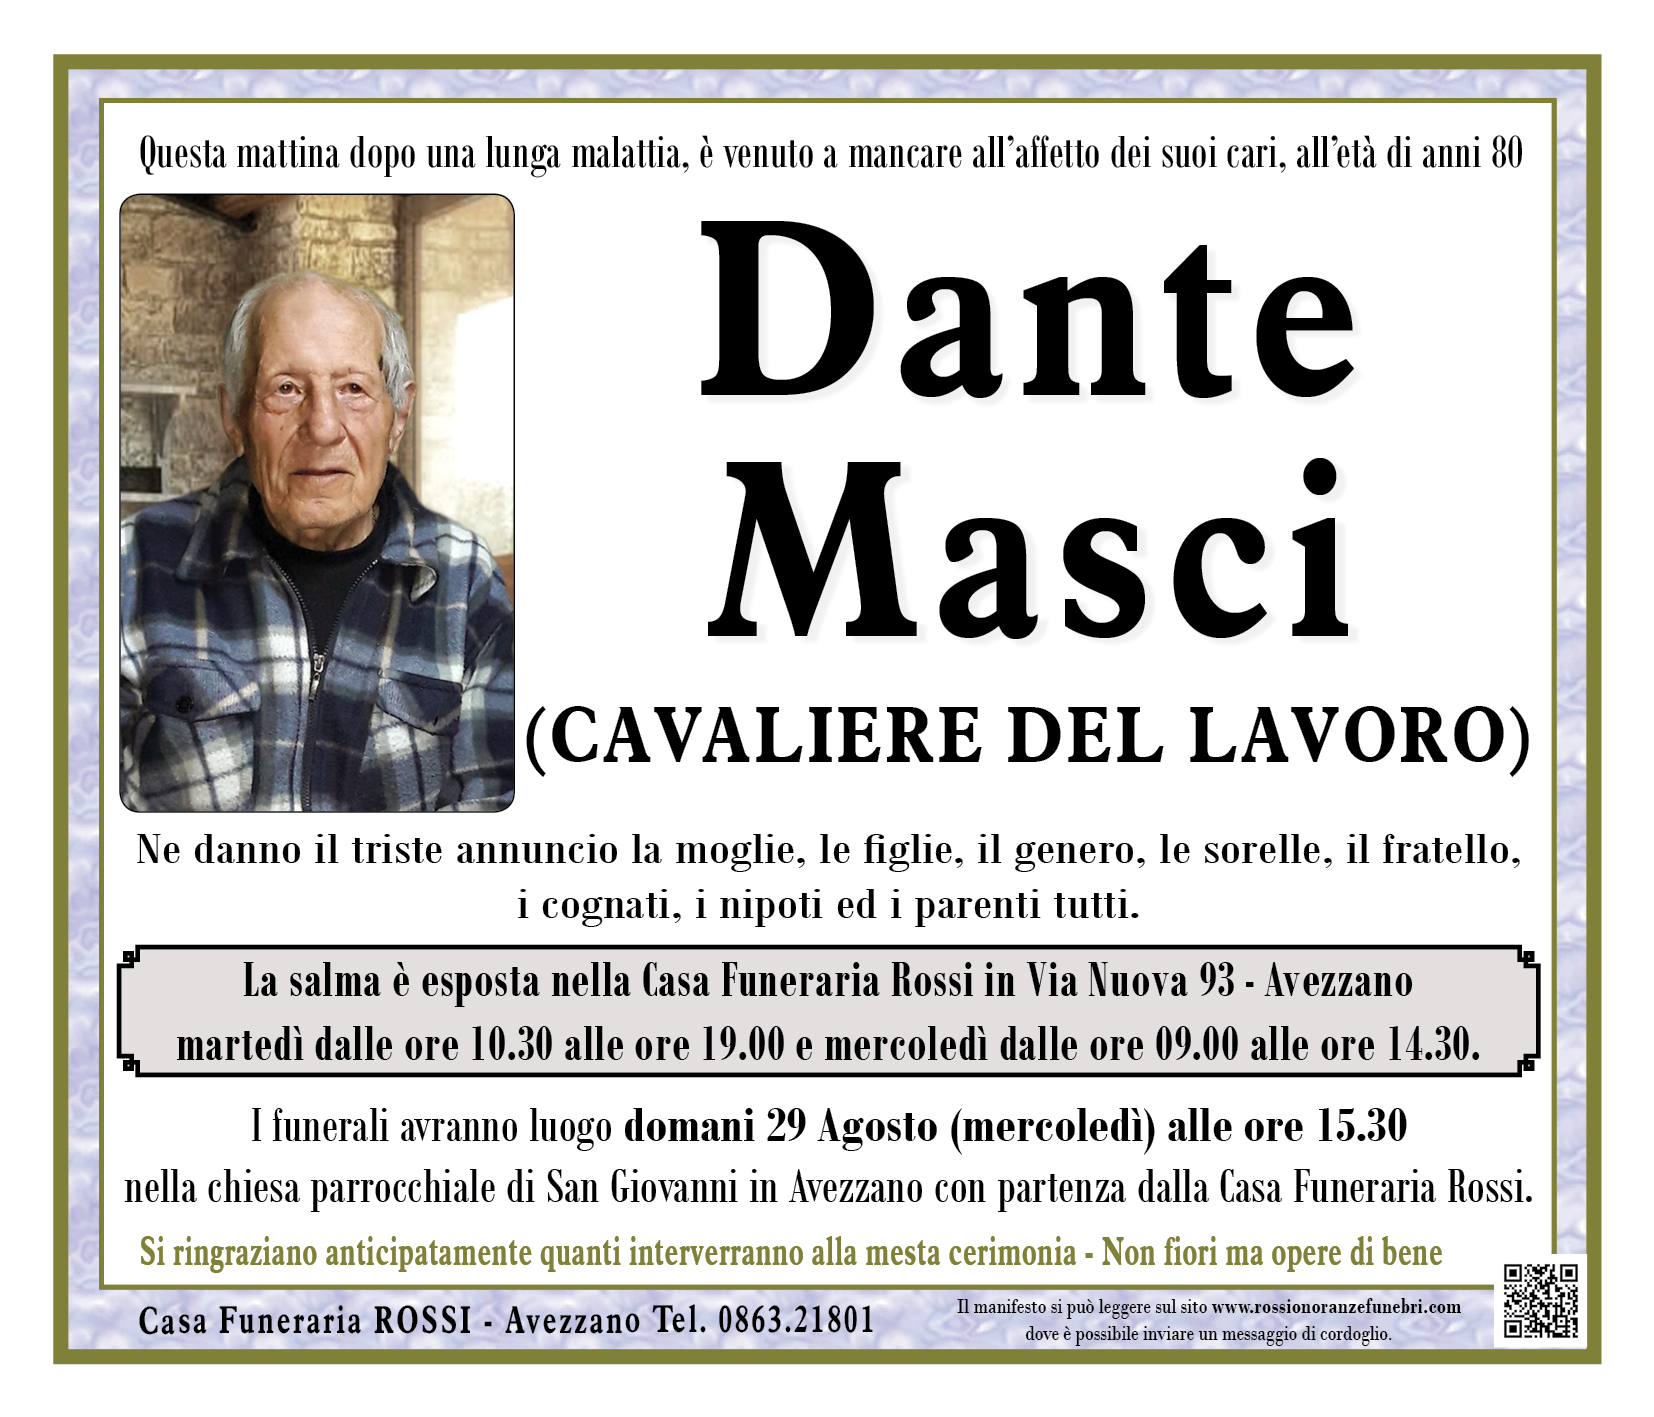 Dante Masci